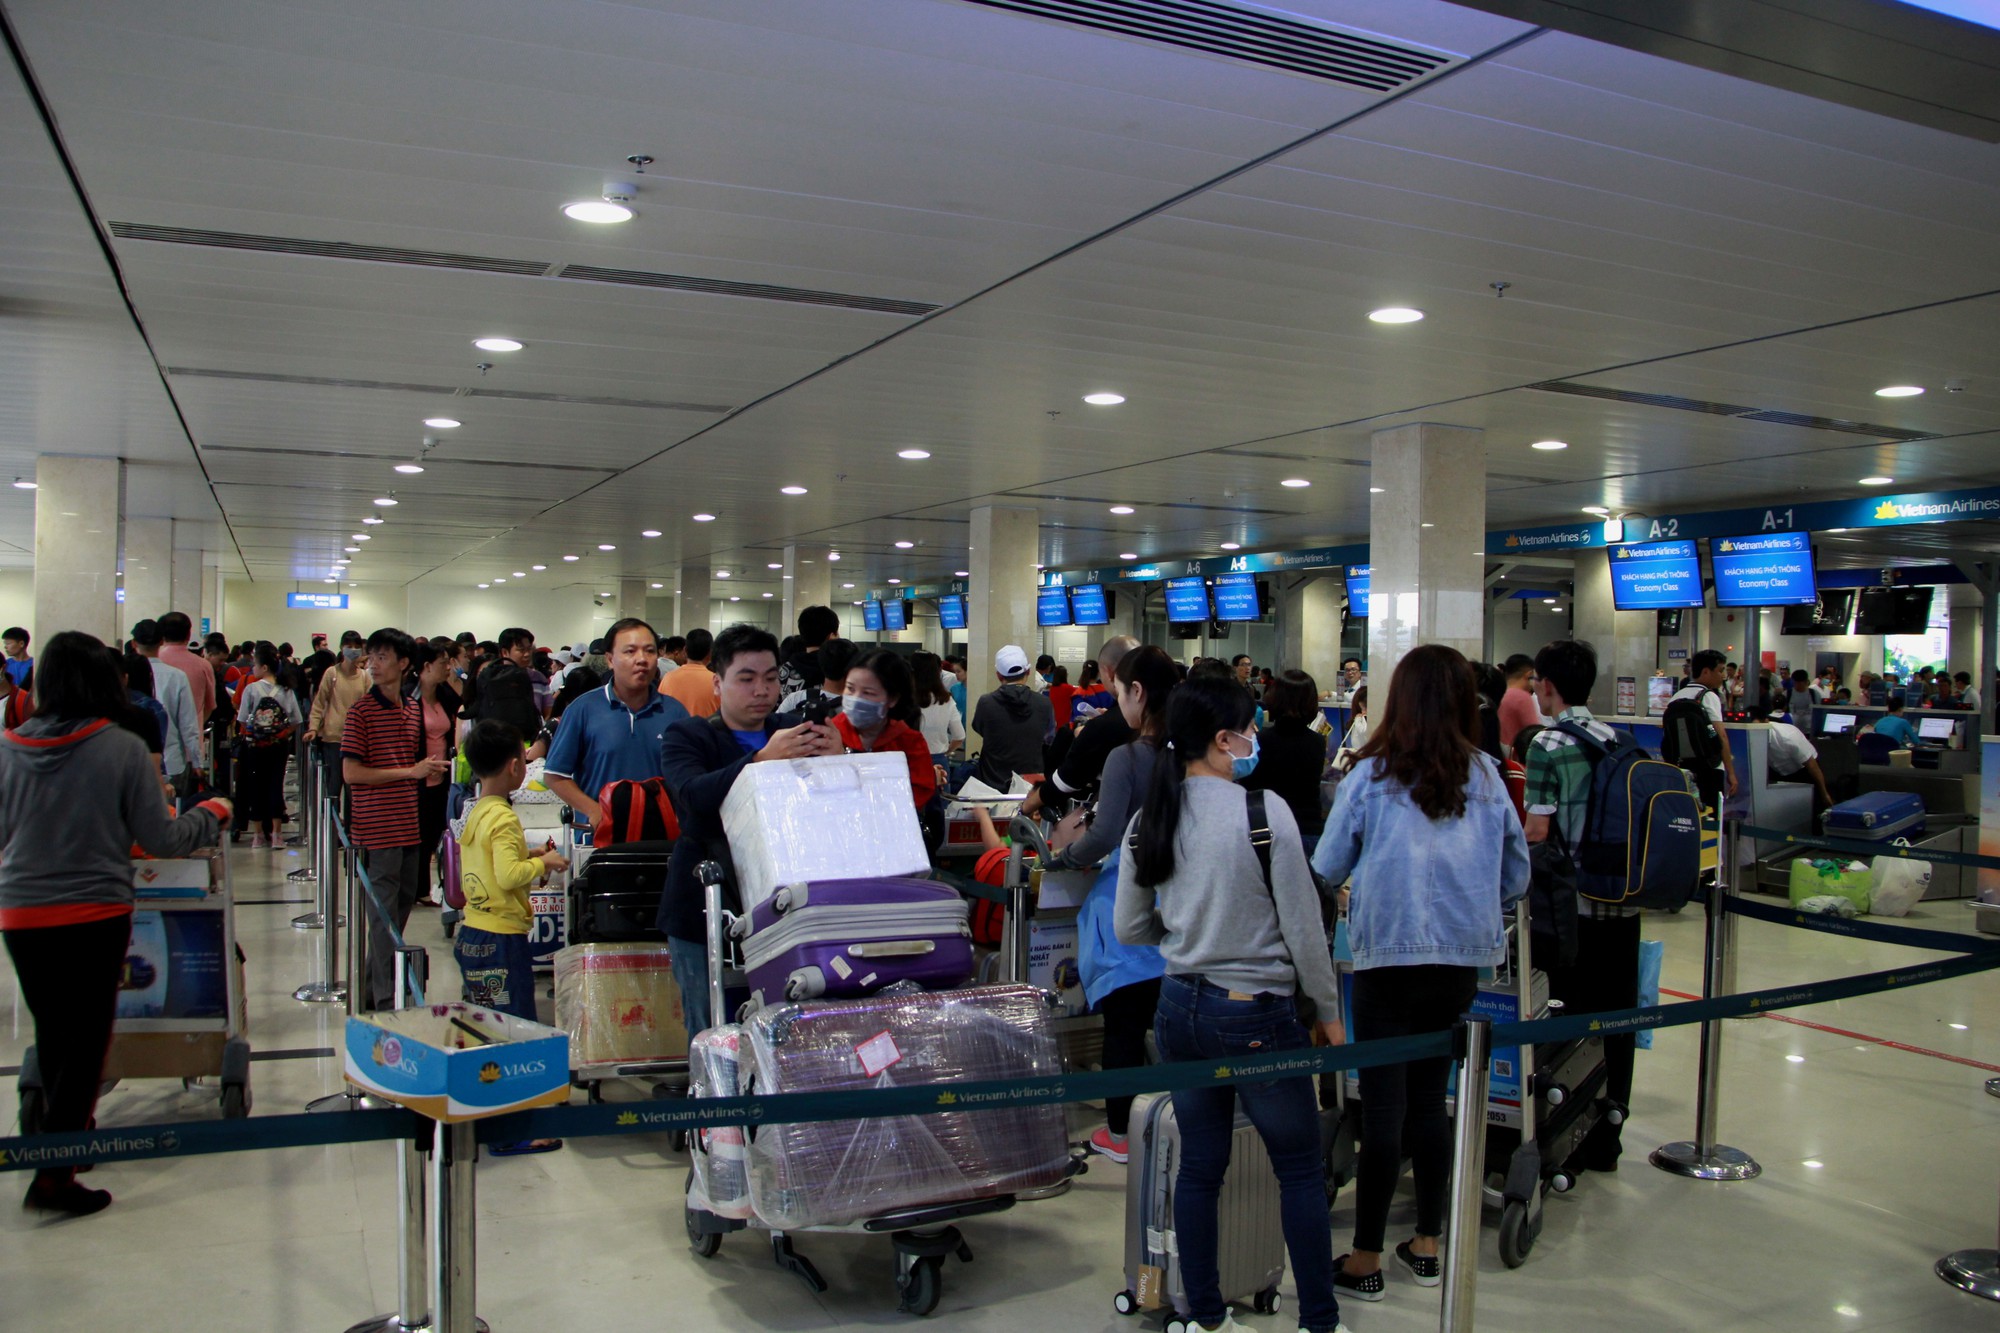 Khách qua sân bay Tân Sơn Nhất đạt “kỷ lục” trong dịp Tết Mậu Tuất 2018 - Ảnh 1.